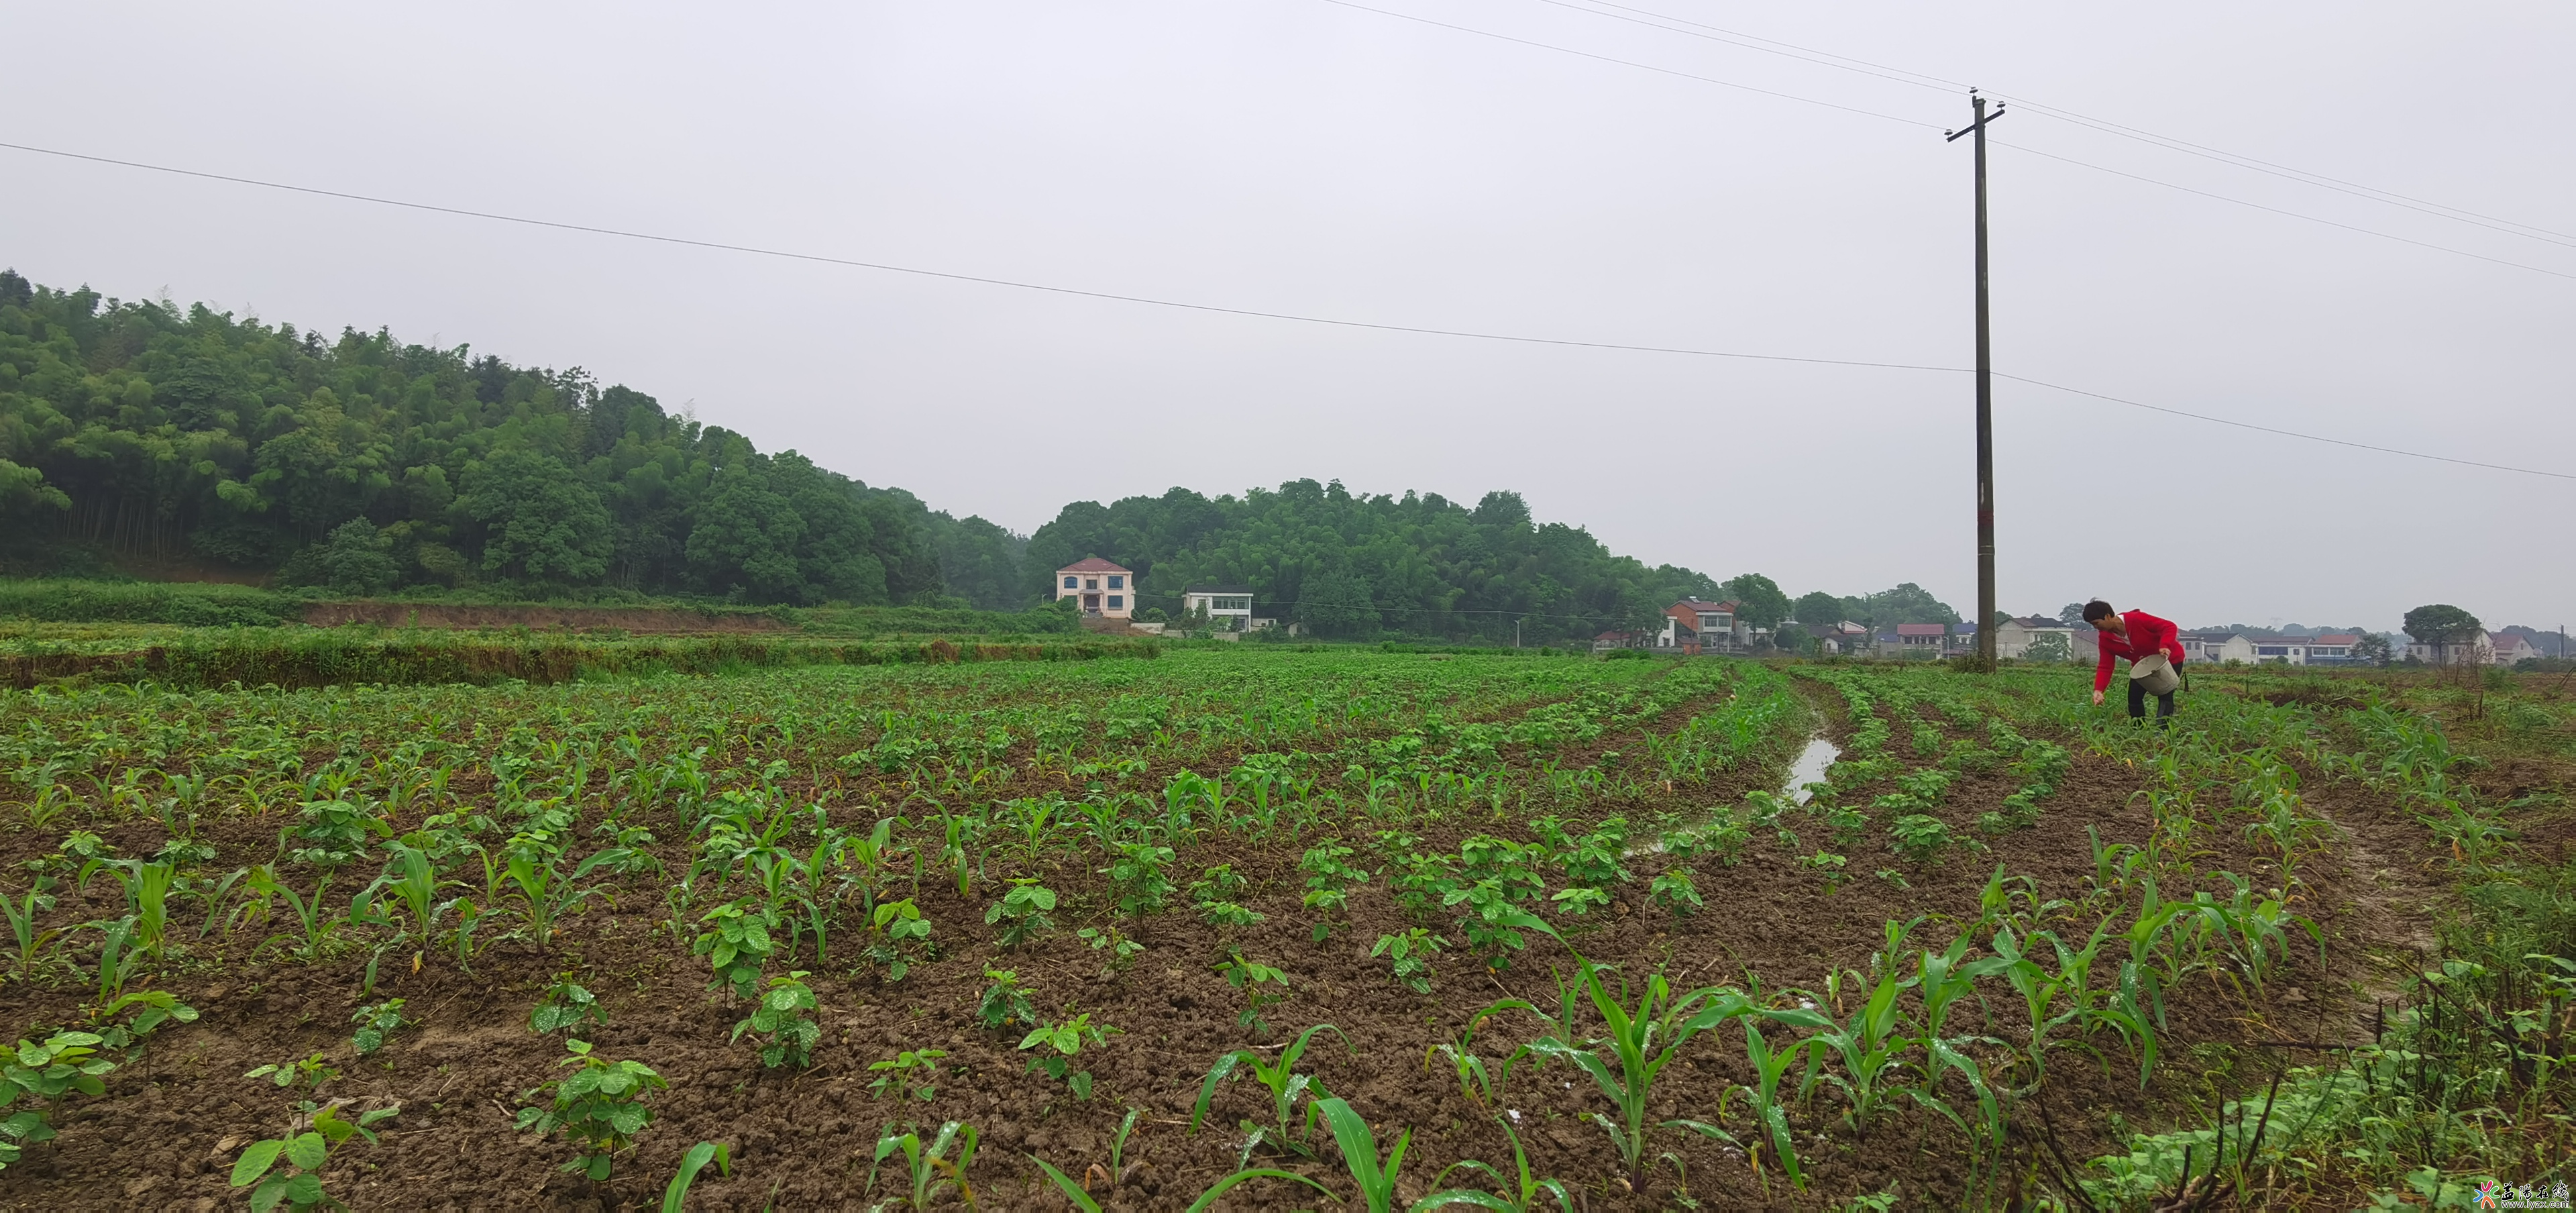 桃江推广大豆玉米带状复合种植 播种面积逾两万亩